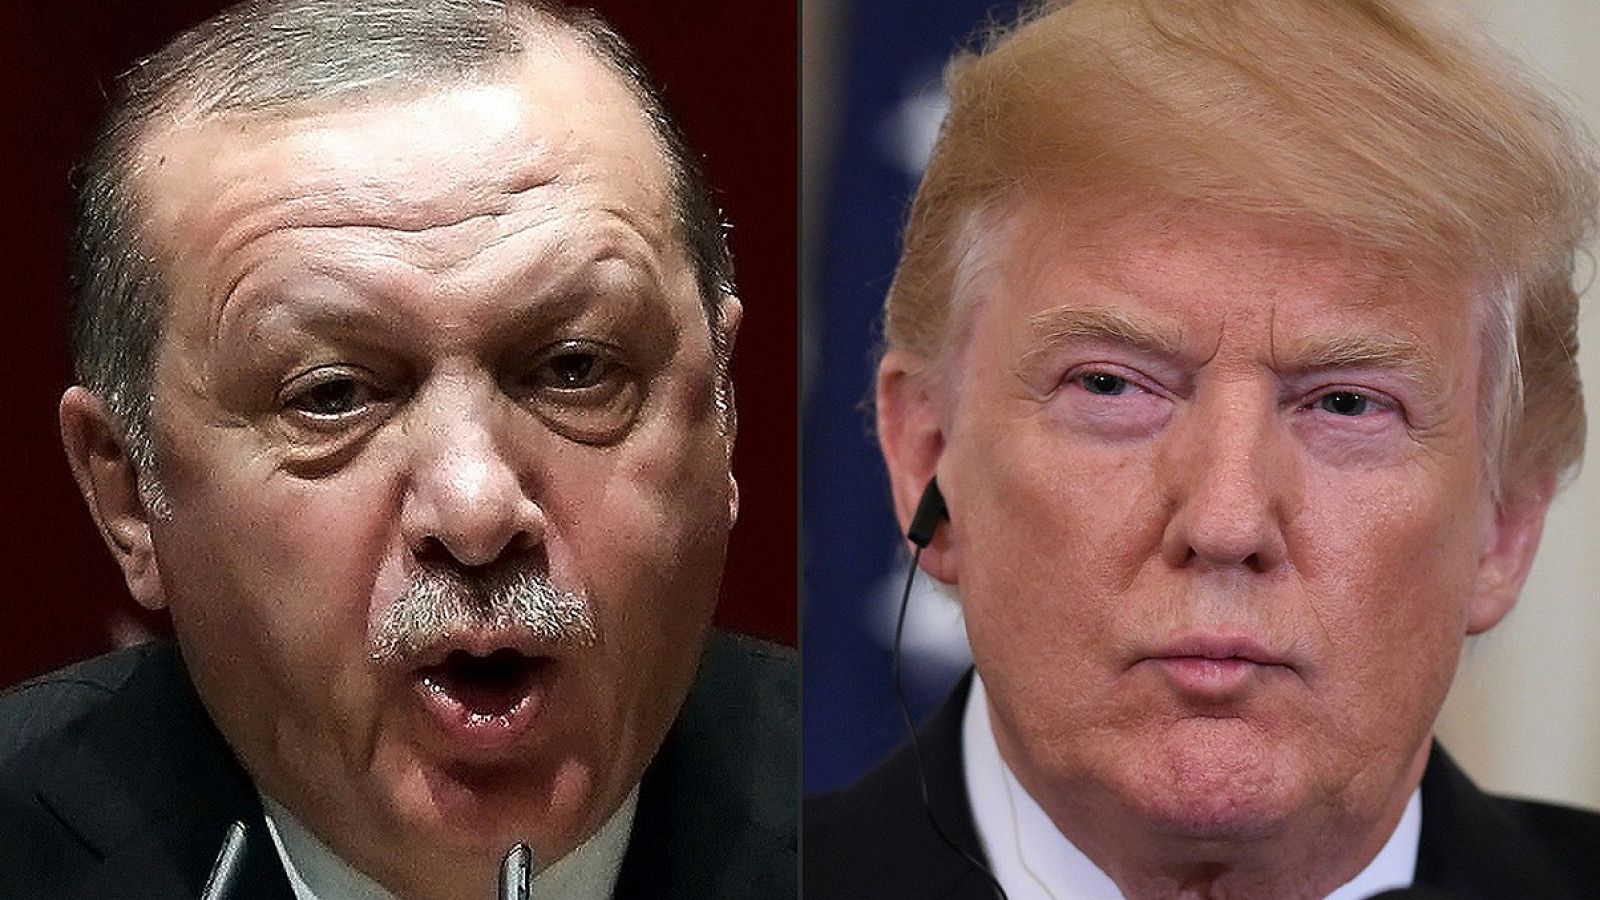 El presidente turco, Recep Tayyip Erdogan (izquierda) y el estadounidense, Donald Trump (Fotos: ADEM ALTAN and SAUL LOEB / AFP)